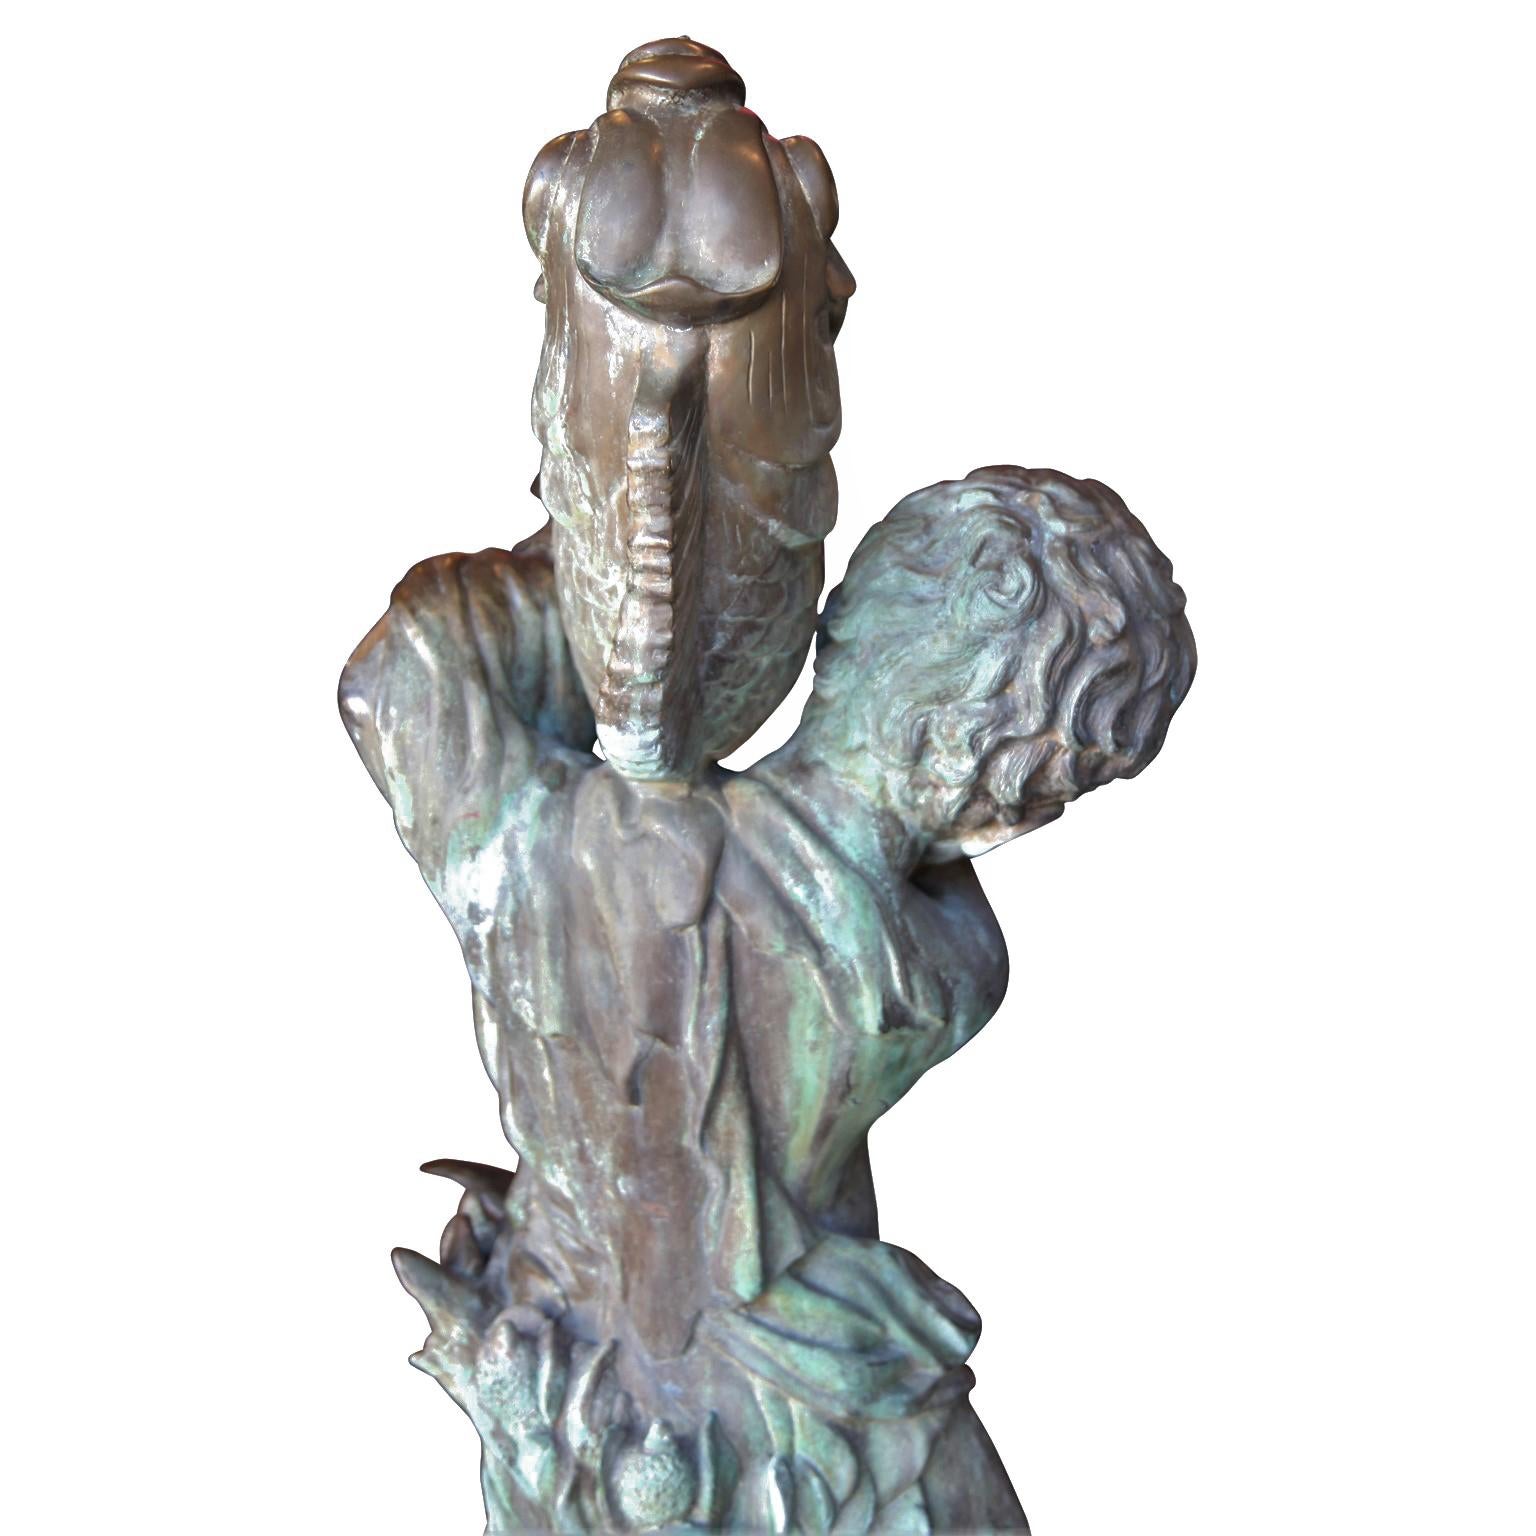 Bronzeskulptur von Amor, der einen Fisch hält. Diese schöne Bronzeskulptur weist komplizierte Details auf und hat eine schöne natürliche Patina.